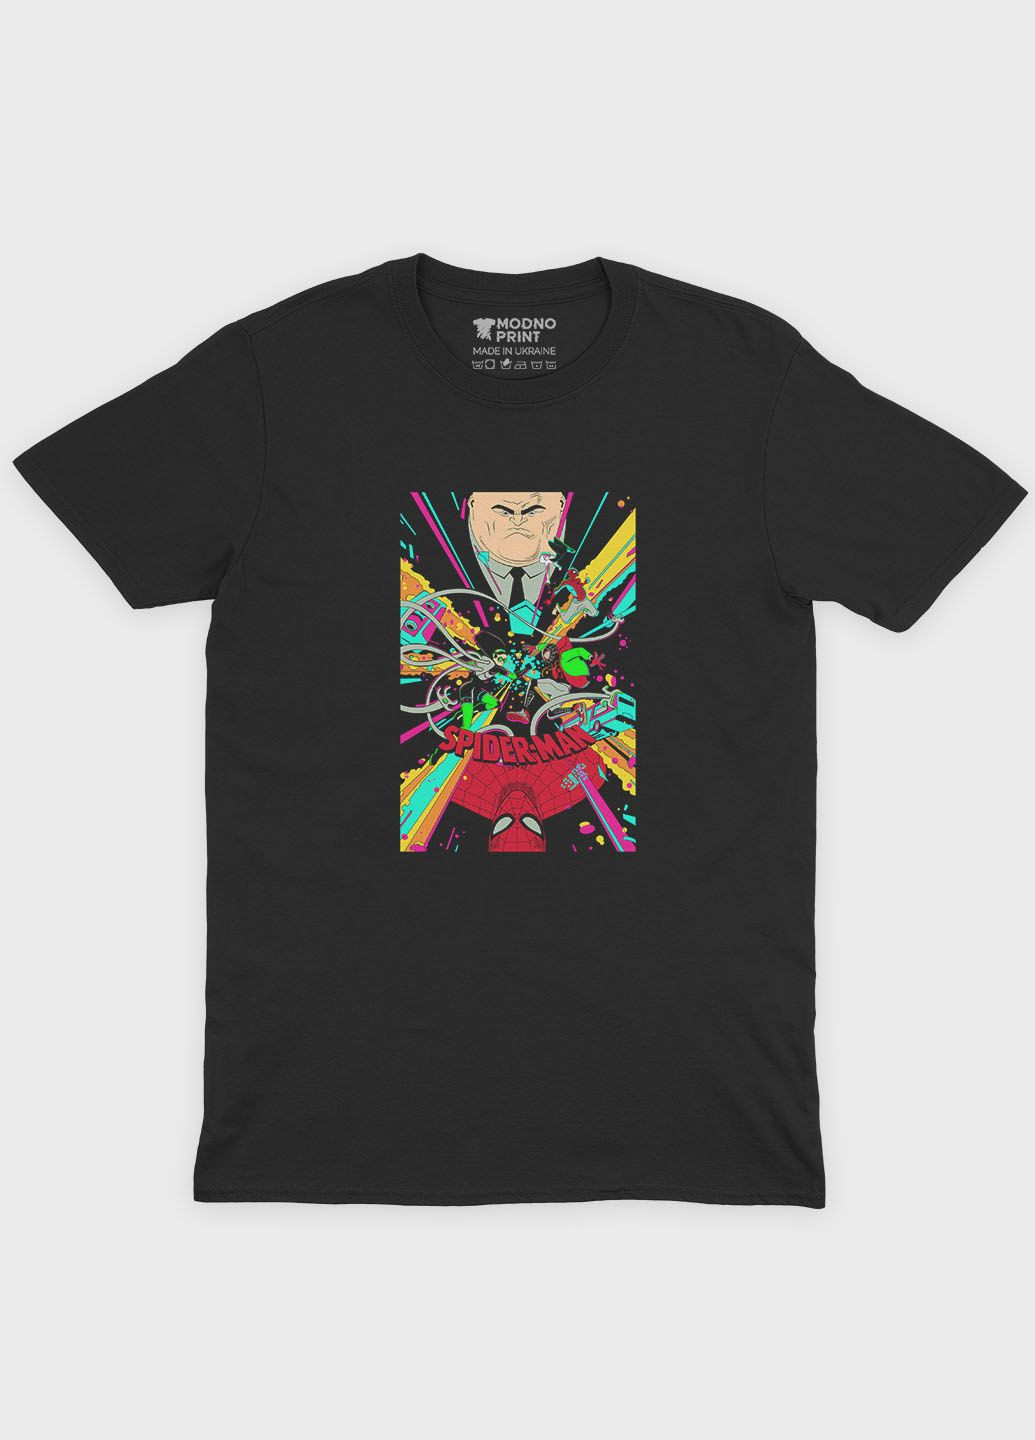 Чорна демісезонна футболка для дівчинки з принтом супергероя - людина-павук (ts001-1-gl-006-014-022-g) Modno